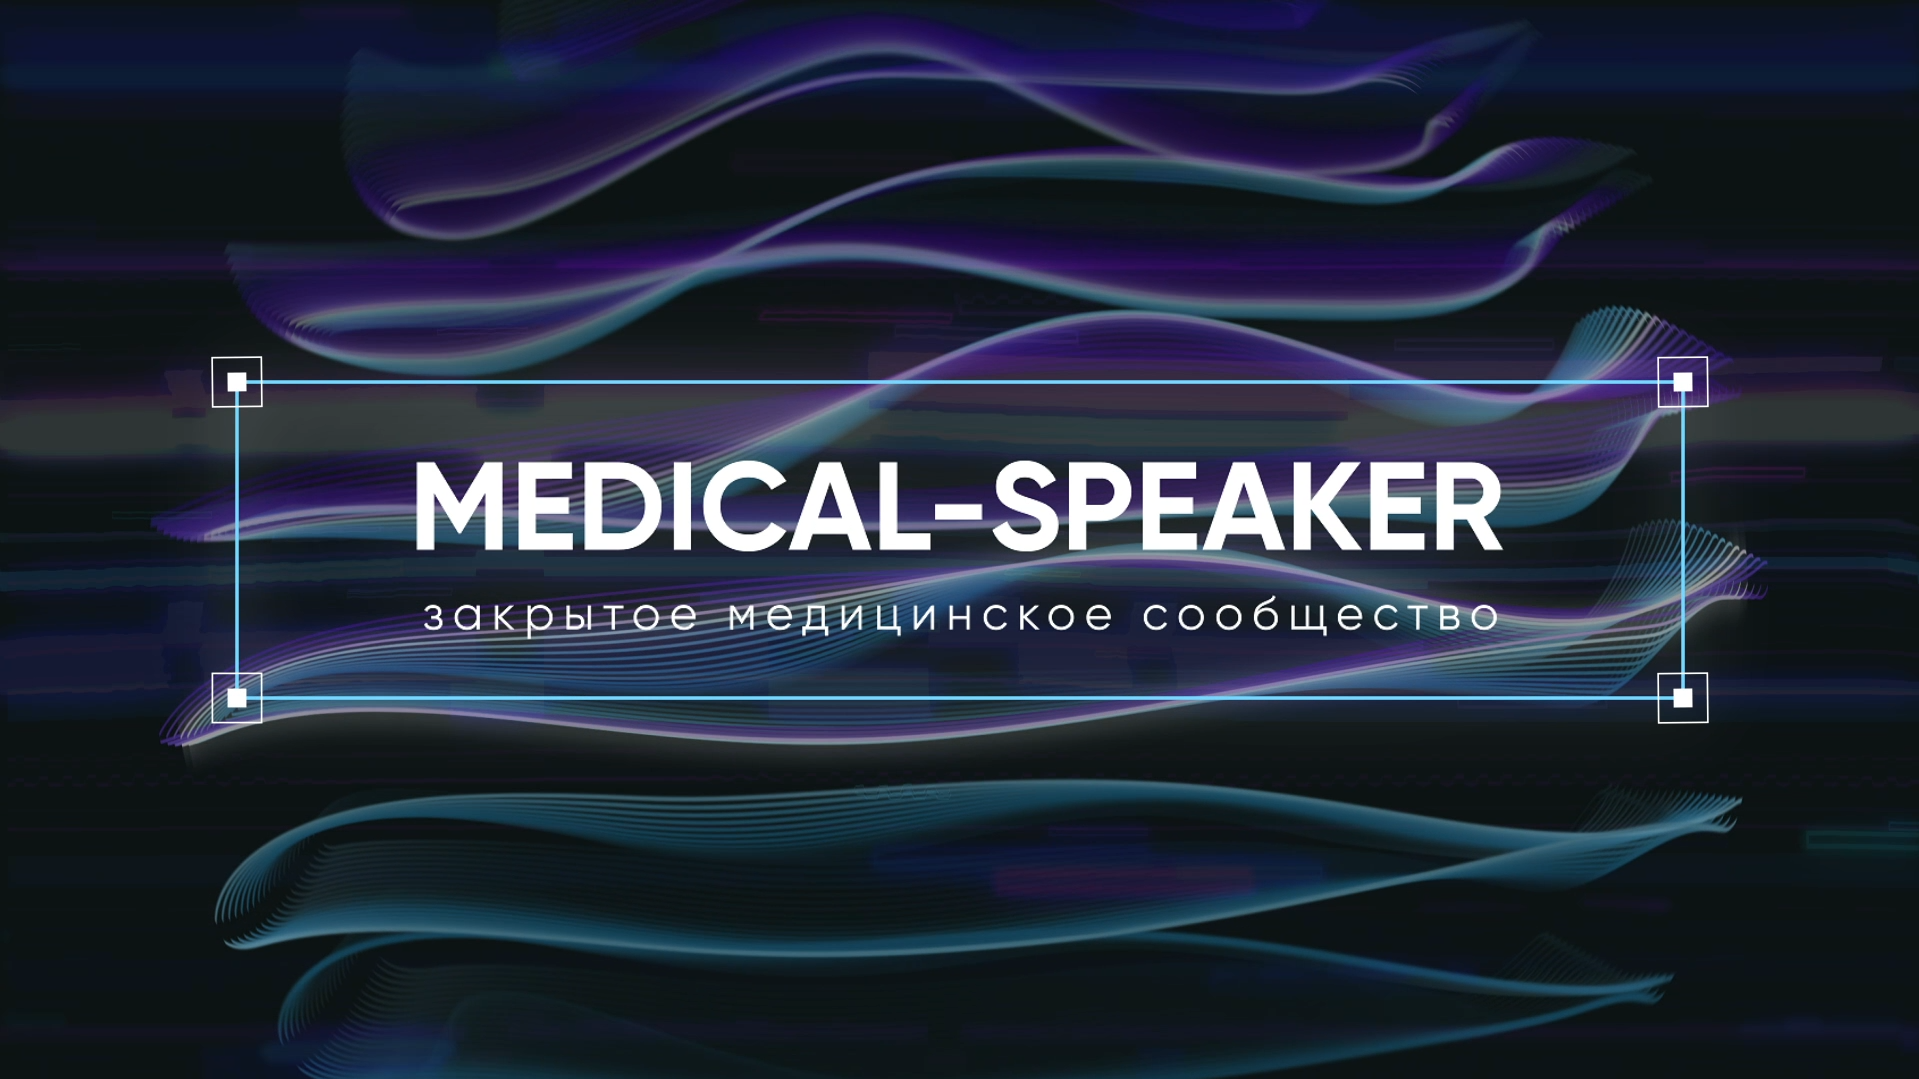 Medical-speaker - Ролик о закрытом медицинском сообществе